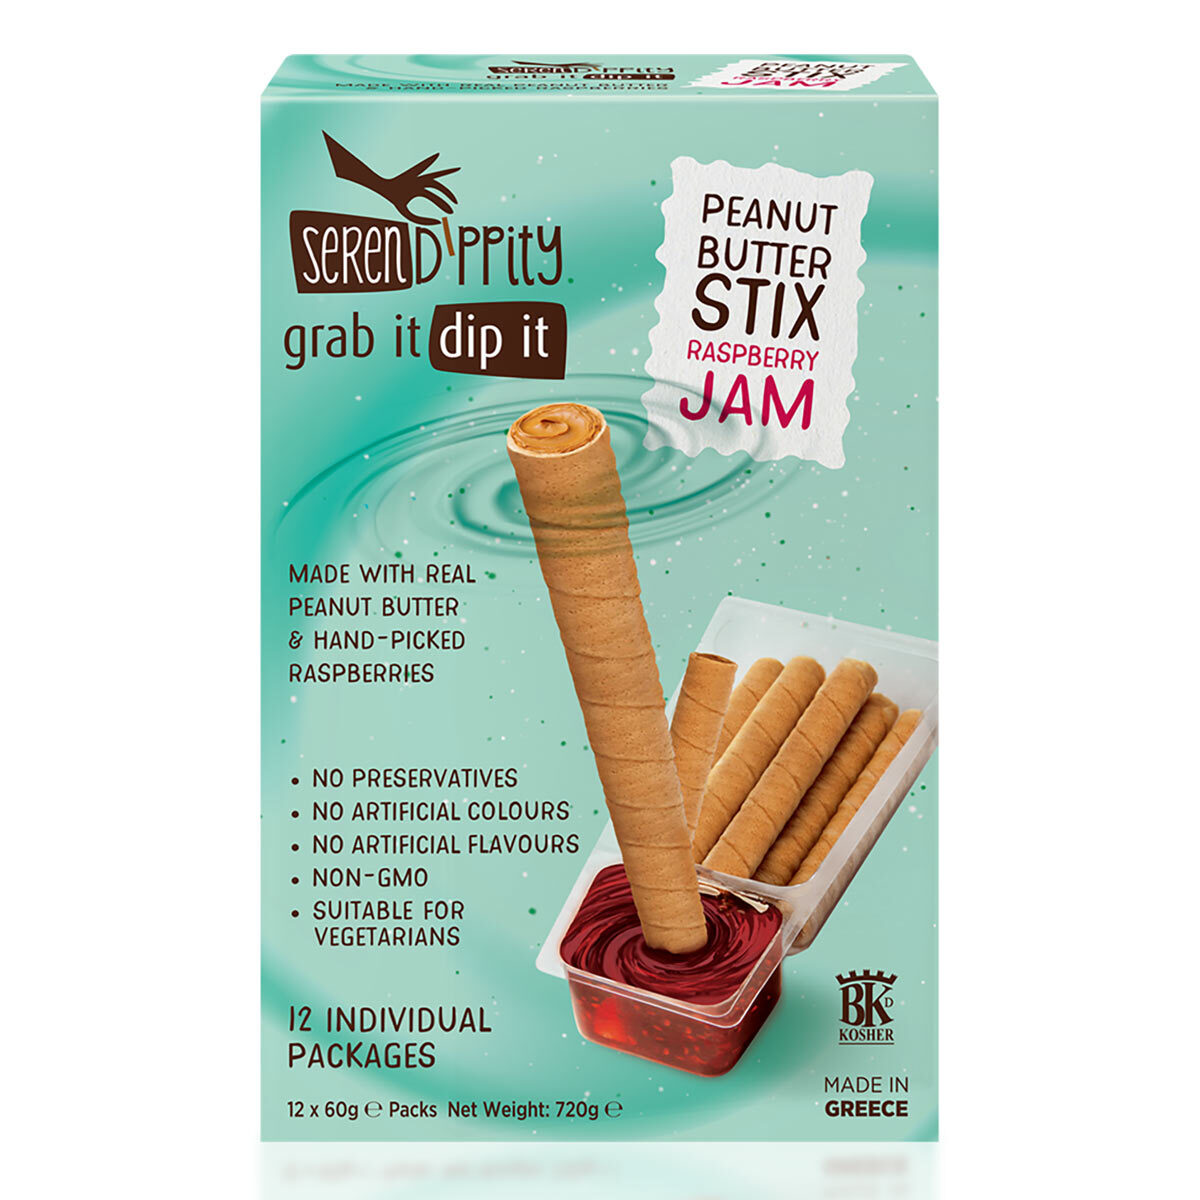 Serendippity Peanut Butter Stix & Jam Dip, 12 x 60g